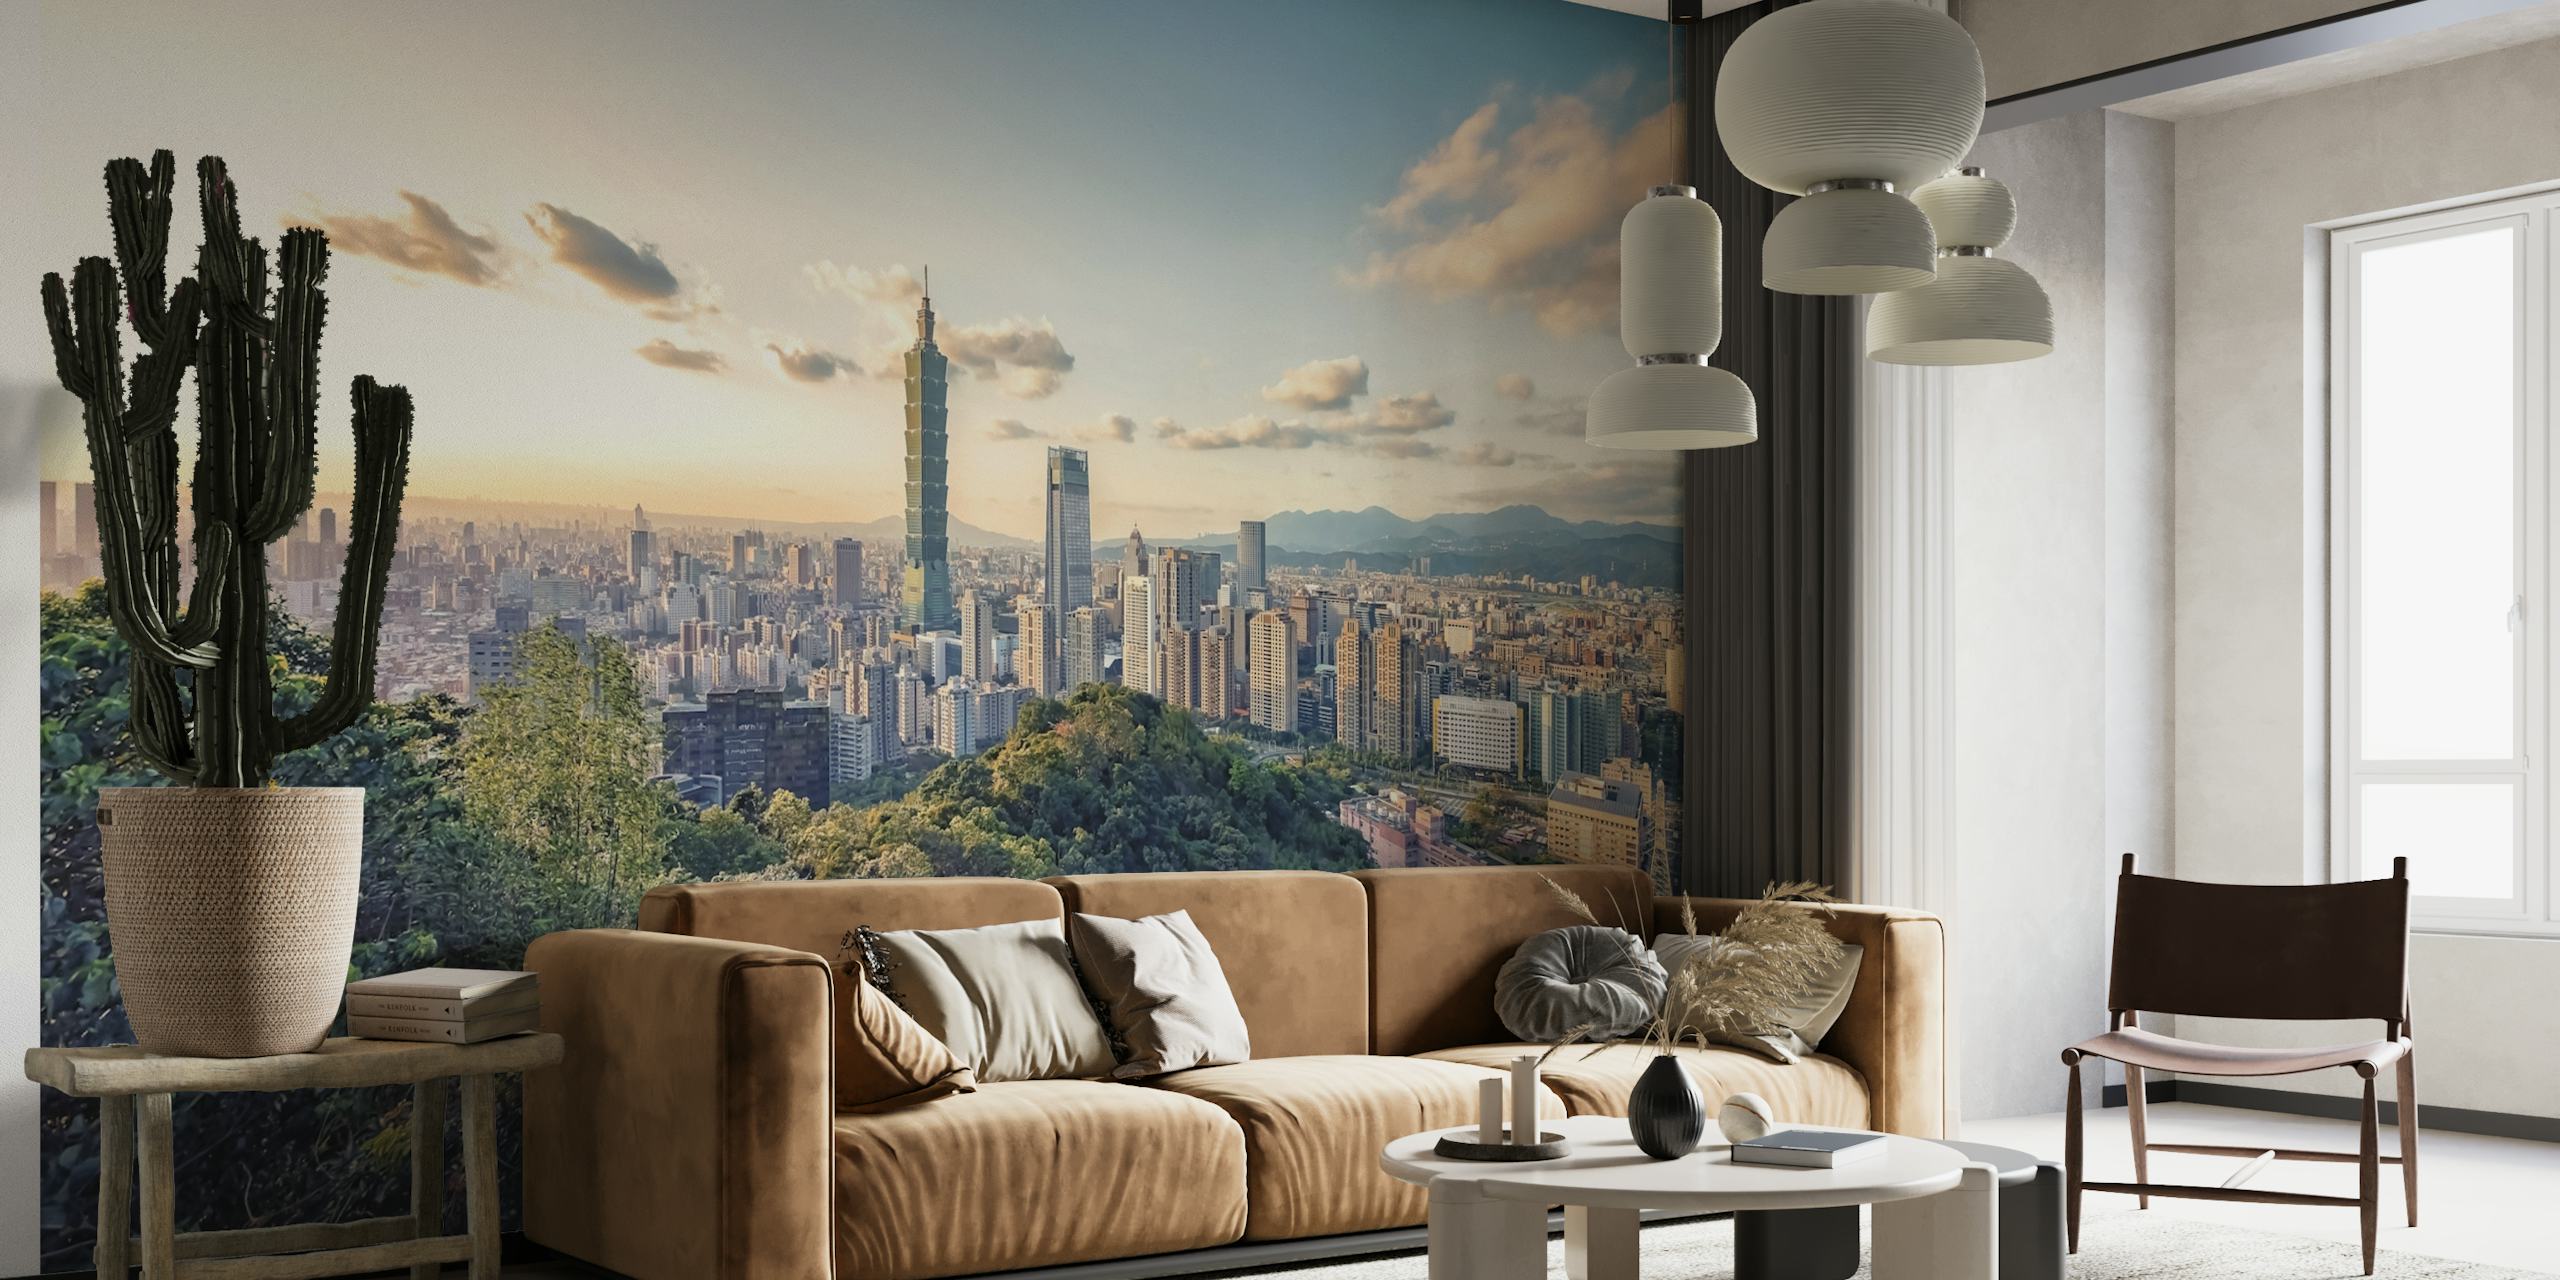 Mural del horizonte de la ciudad de Taipei con el rascacielos Taipei 101